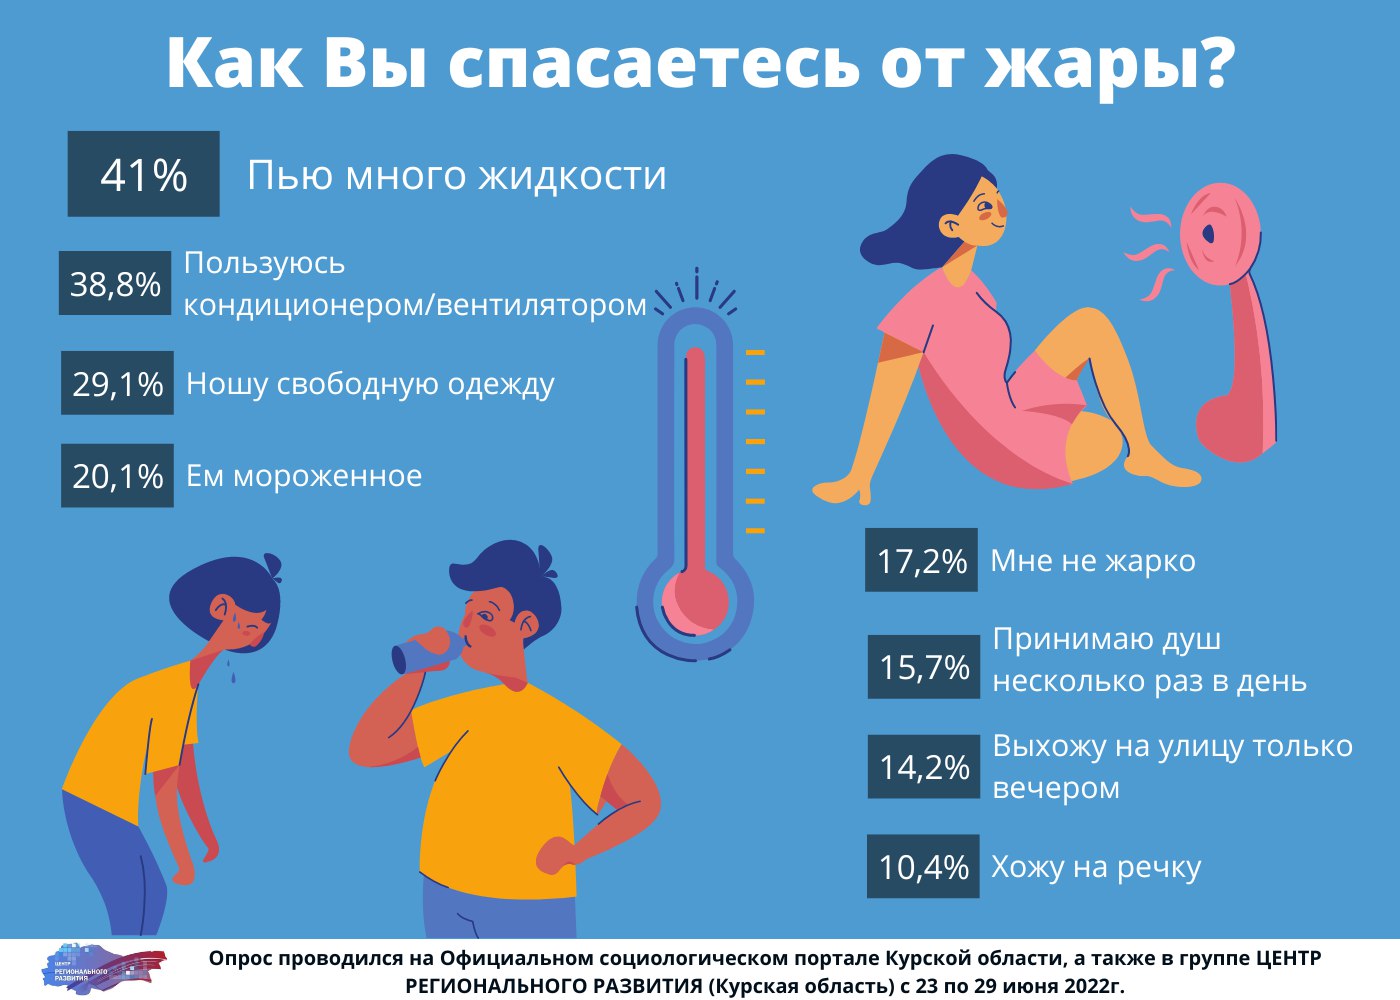 Почему в жару пьют. Инфографика про жару. Что пить в жару. Что нужно пить в жаркую погоду. Питье в жару инфографика роспотреб.